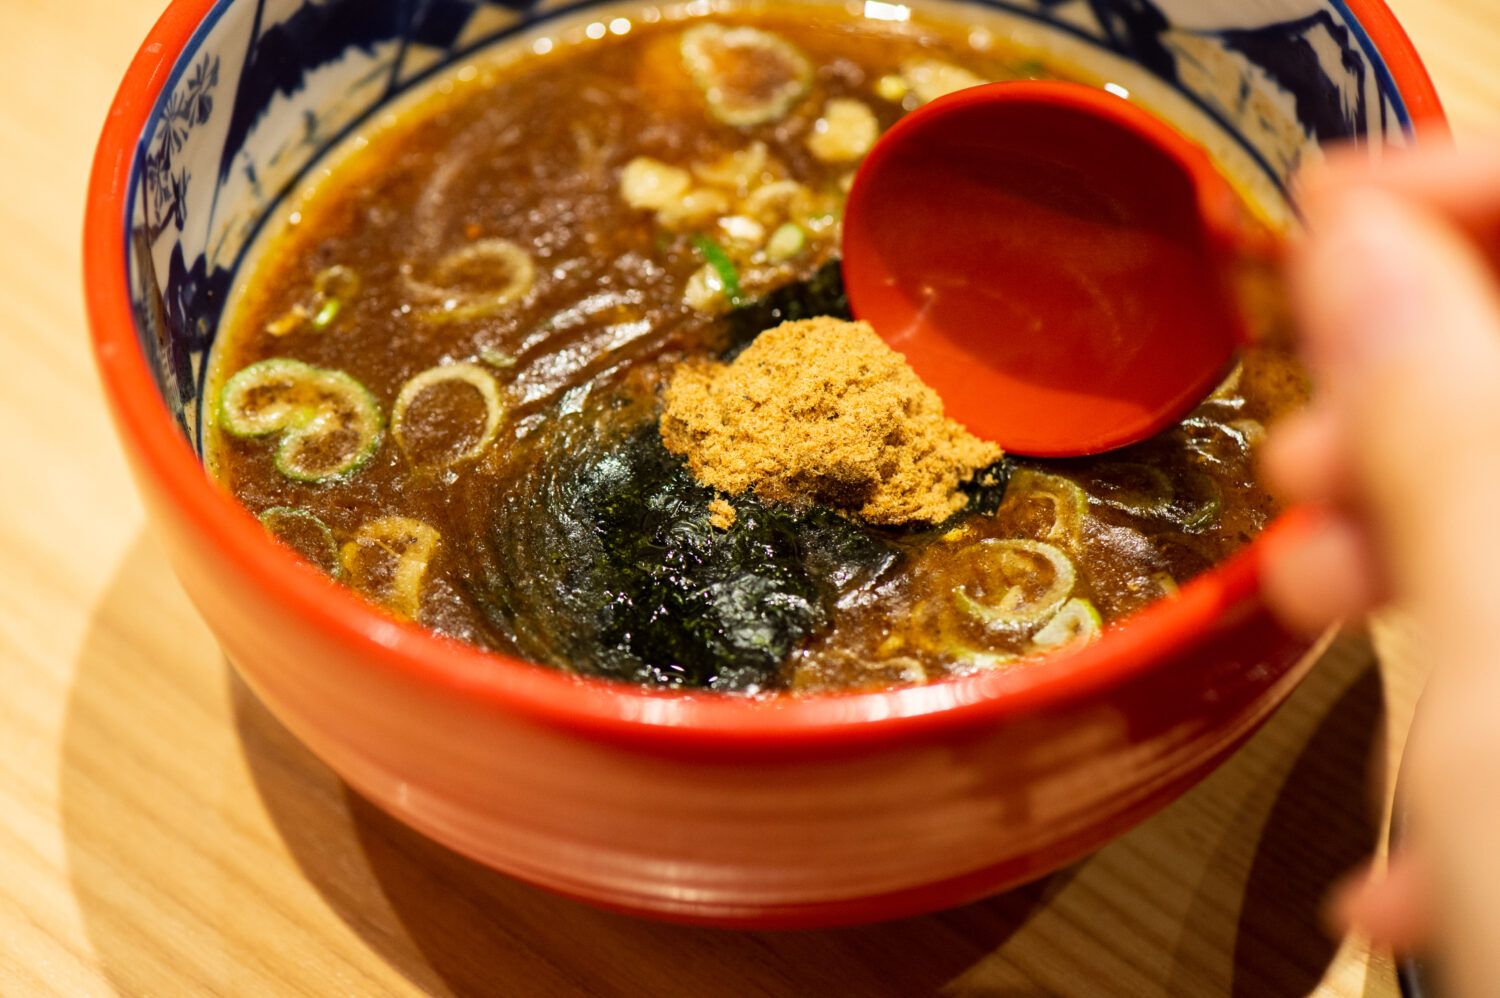 Mix the gyofun (fish powder) into your soup